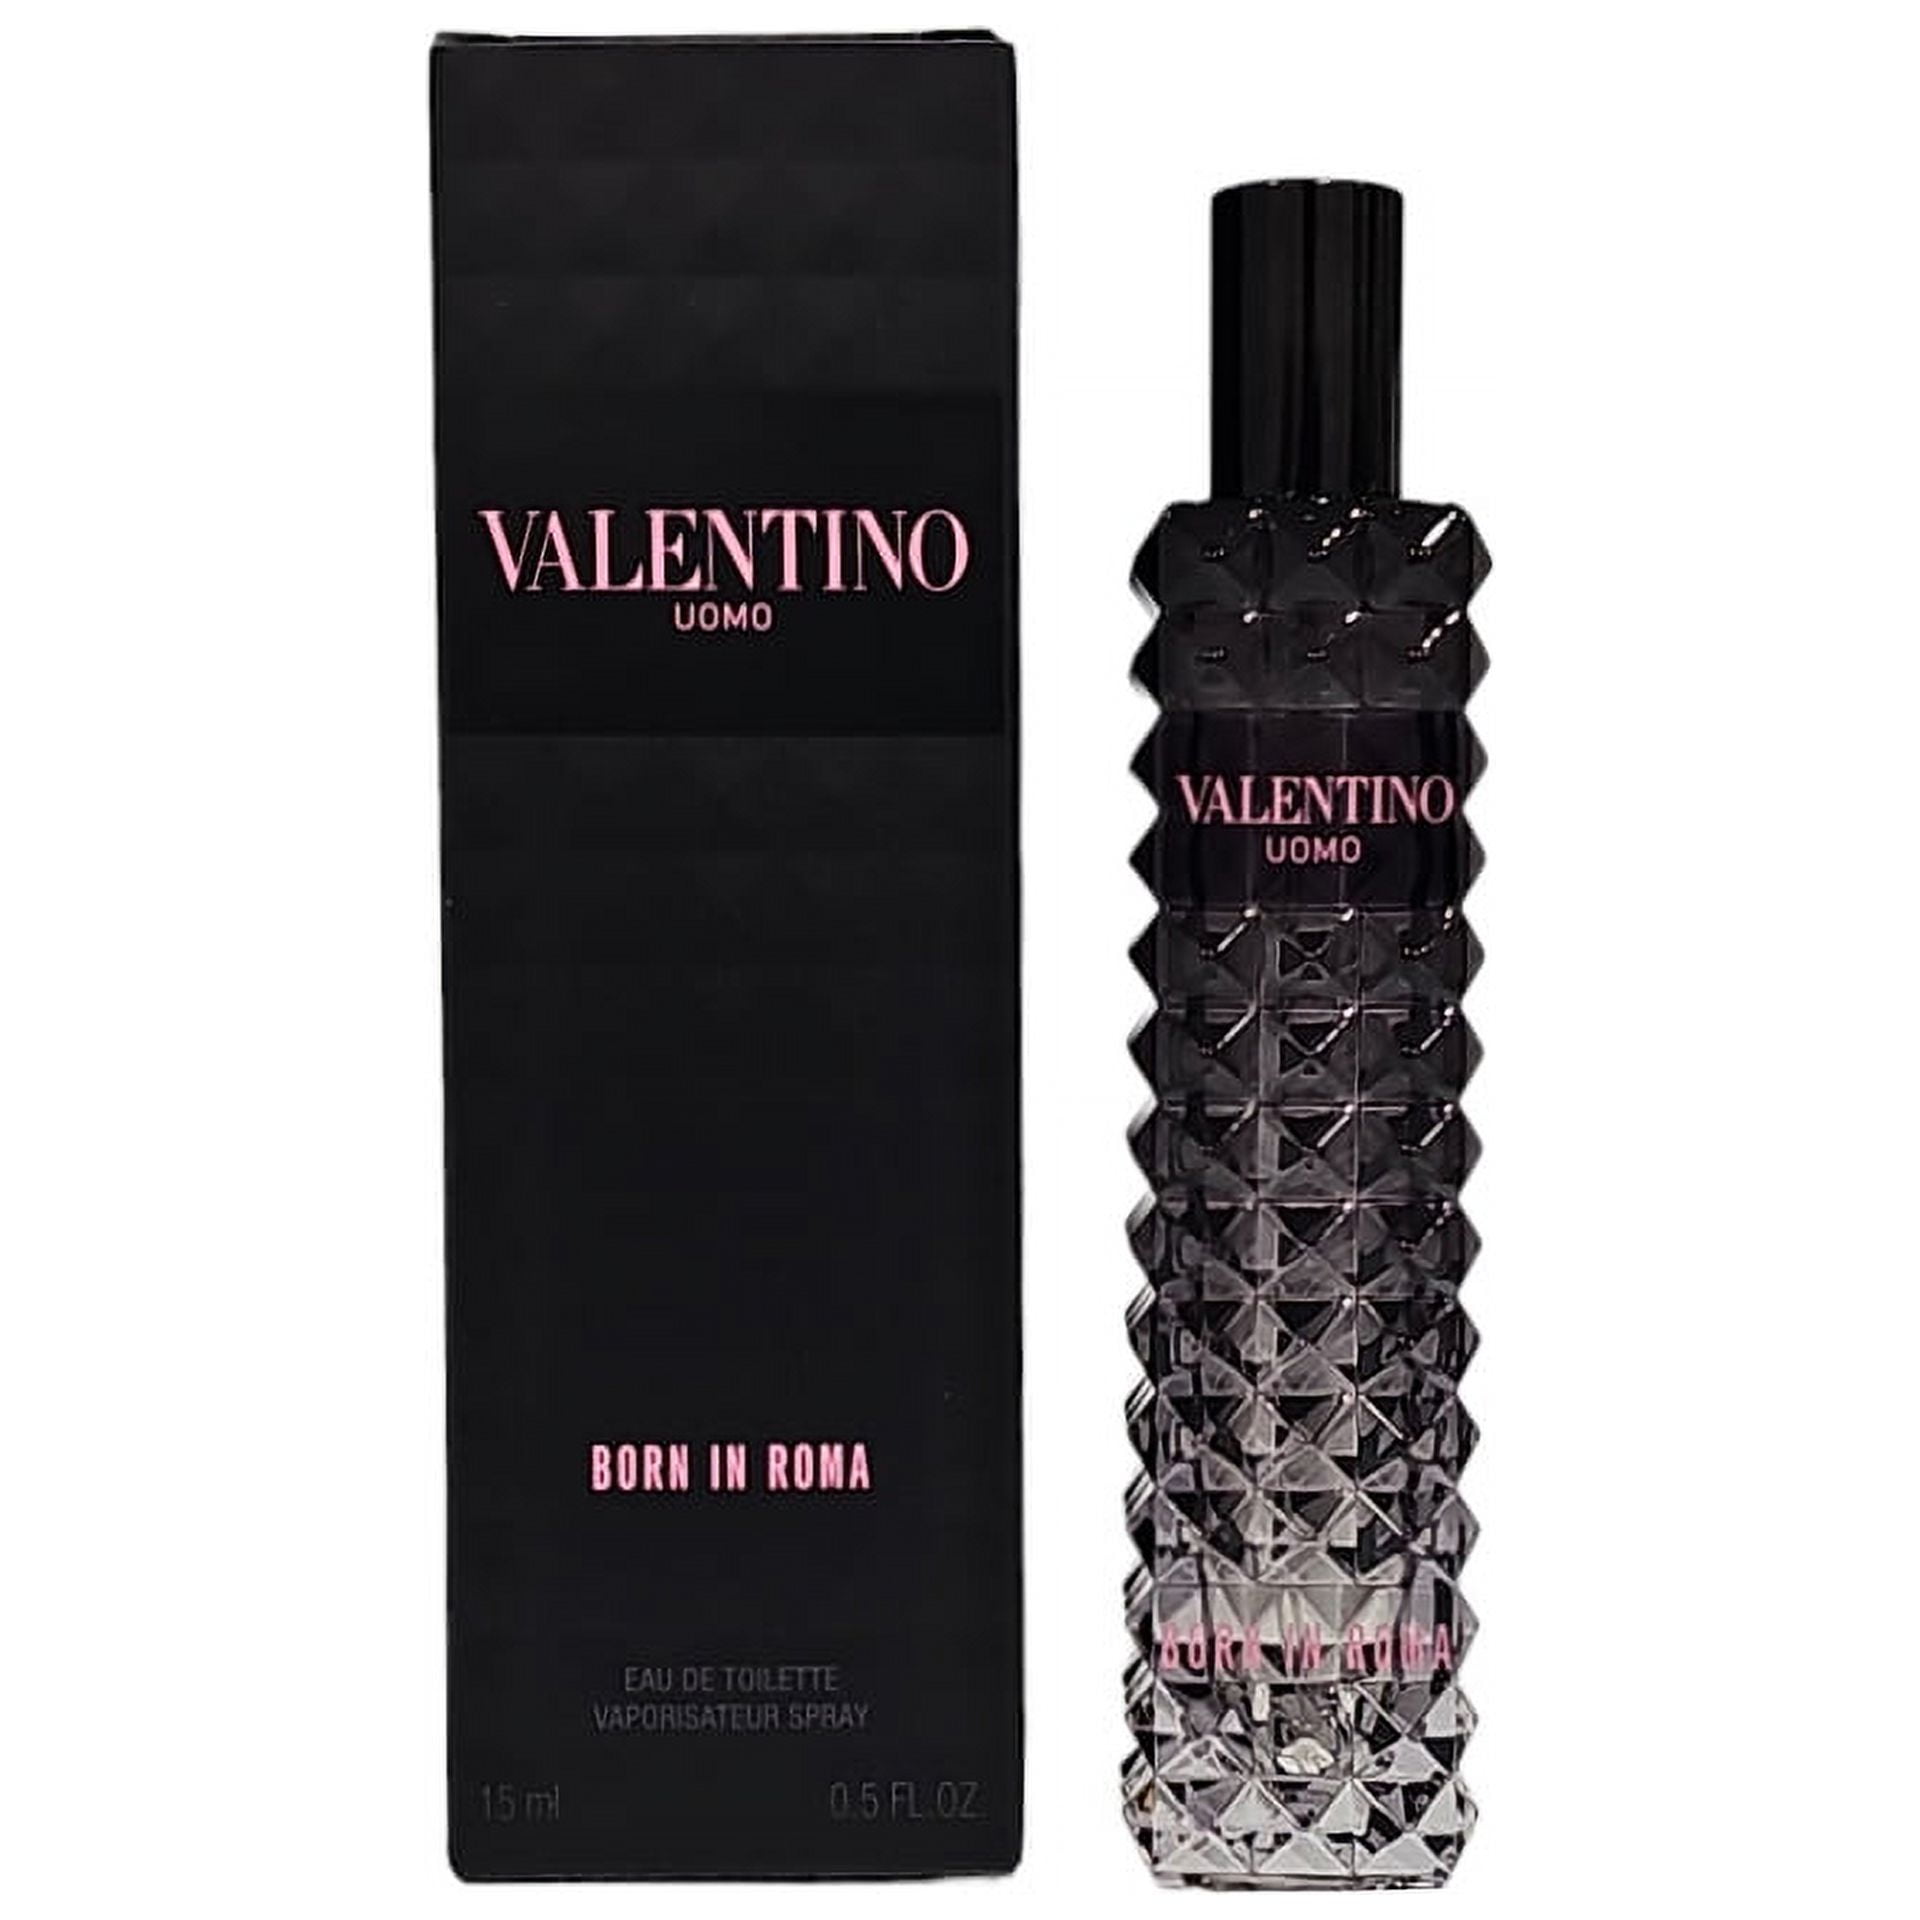 Valentino Uomo Born In Roma 0.5 oz / 15 ml Eau de Toilette Spray For Men  NEW